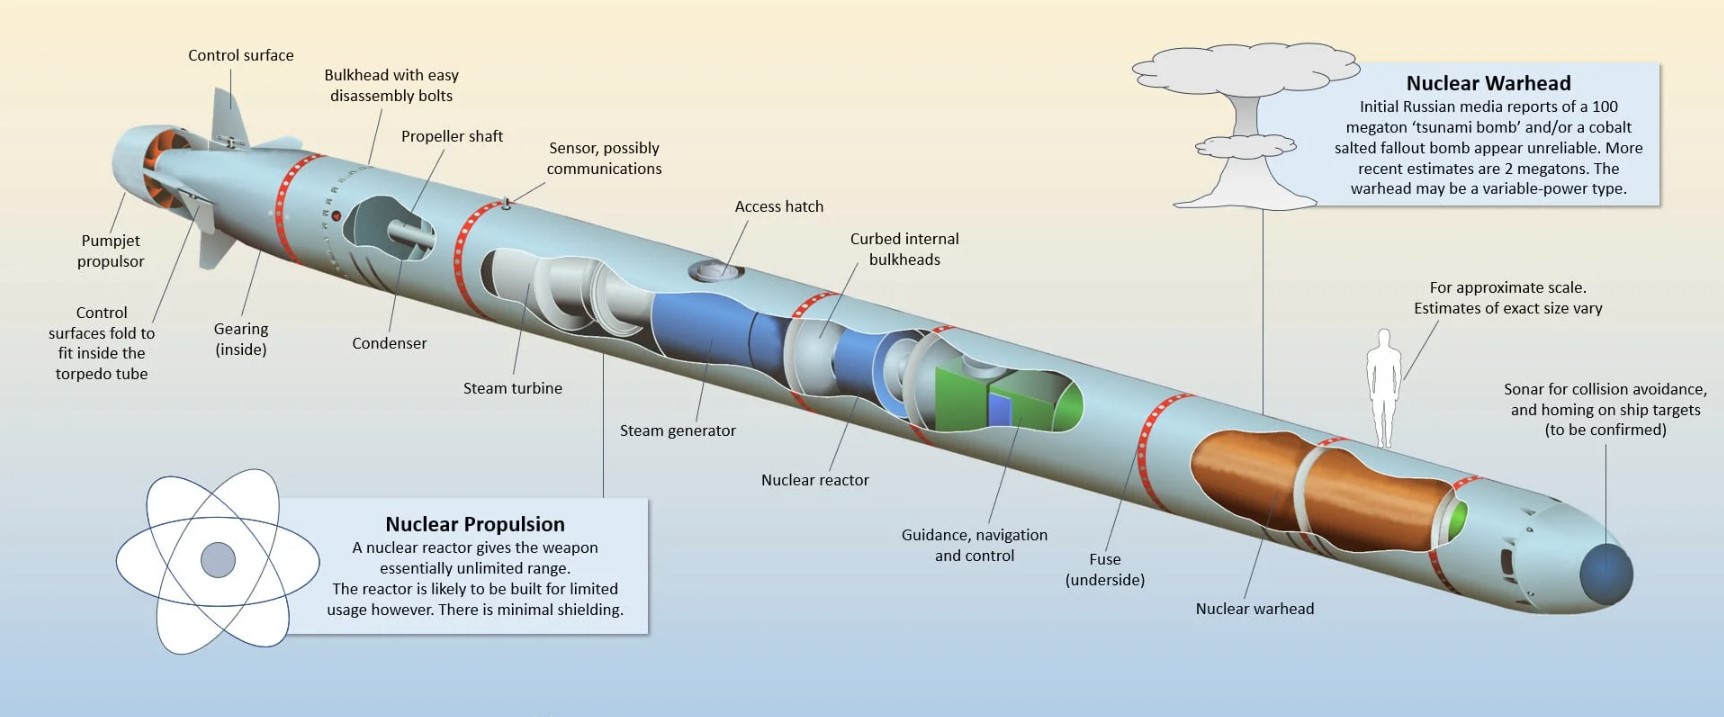 Імовірний вигляд ядерної торпеди "Посейдон"